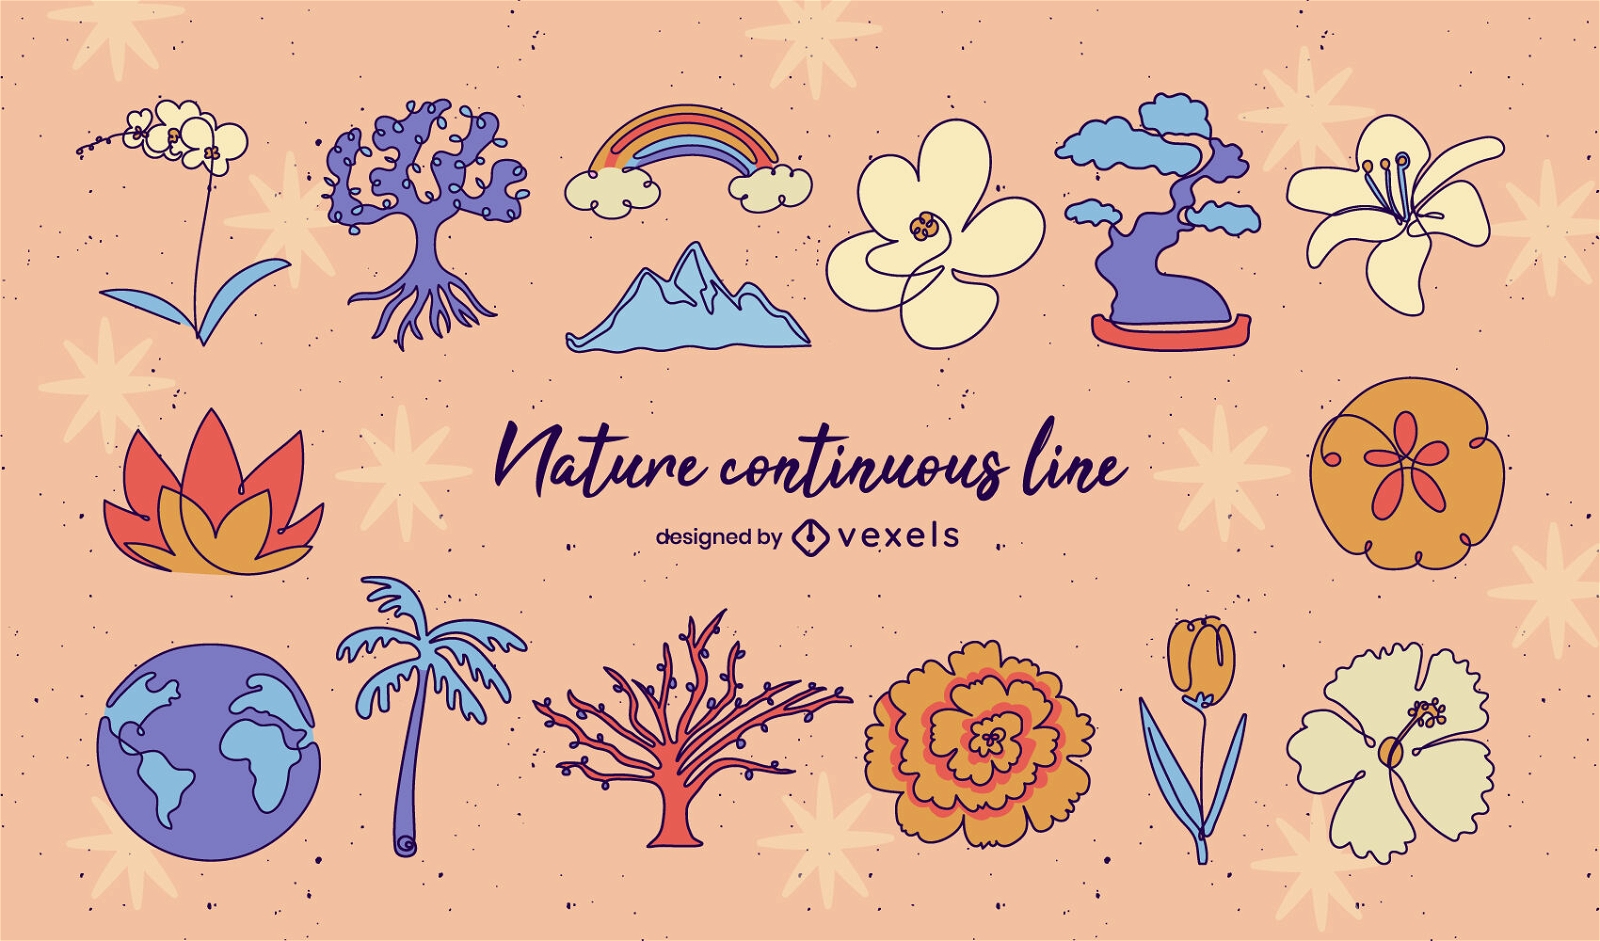 Colorful nature continuous line set